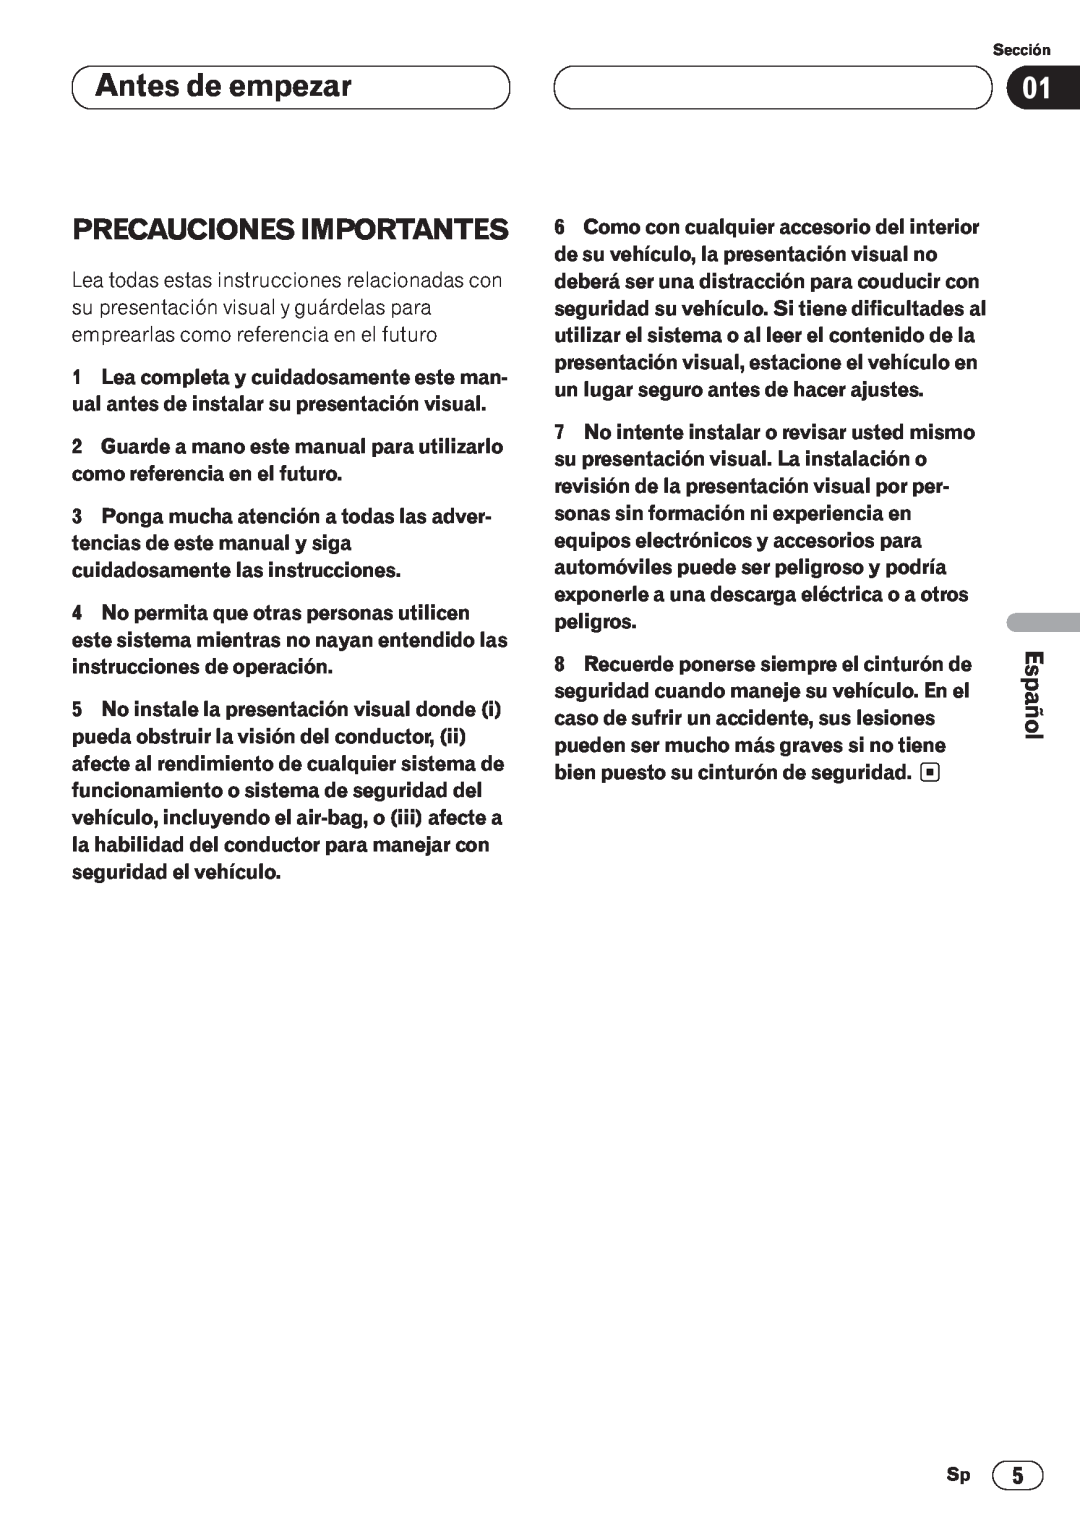 Pioneer AVH-P6400CD operation manual Antes de empezar, Precauciones Importantes, Nederlands, Français, Italiano, peligros 